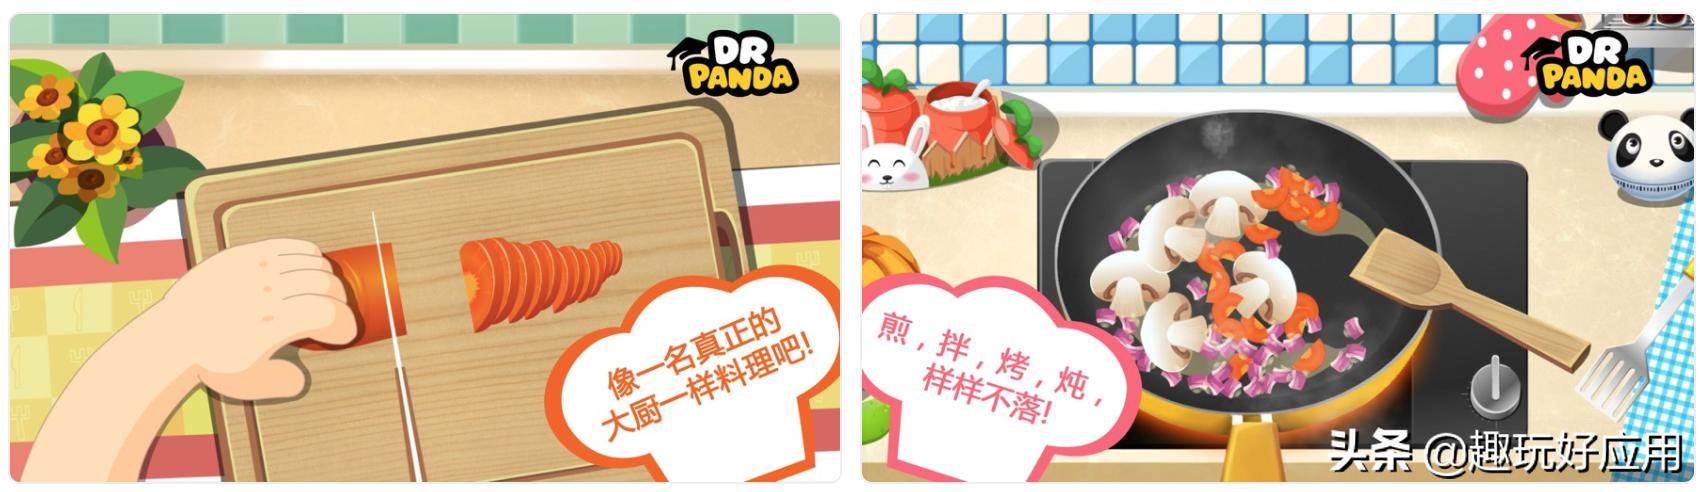 腾讯熊猫博士亚洲餐厅游戏攻略